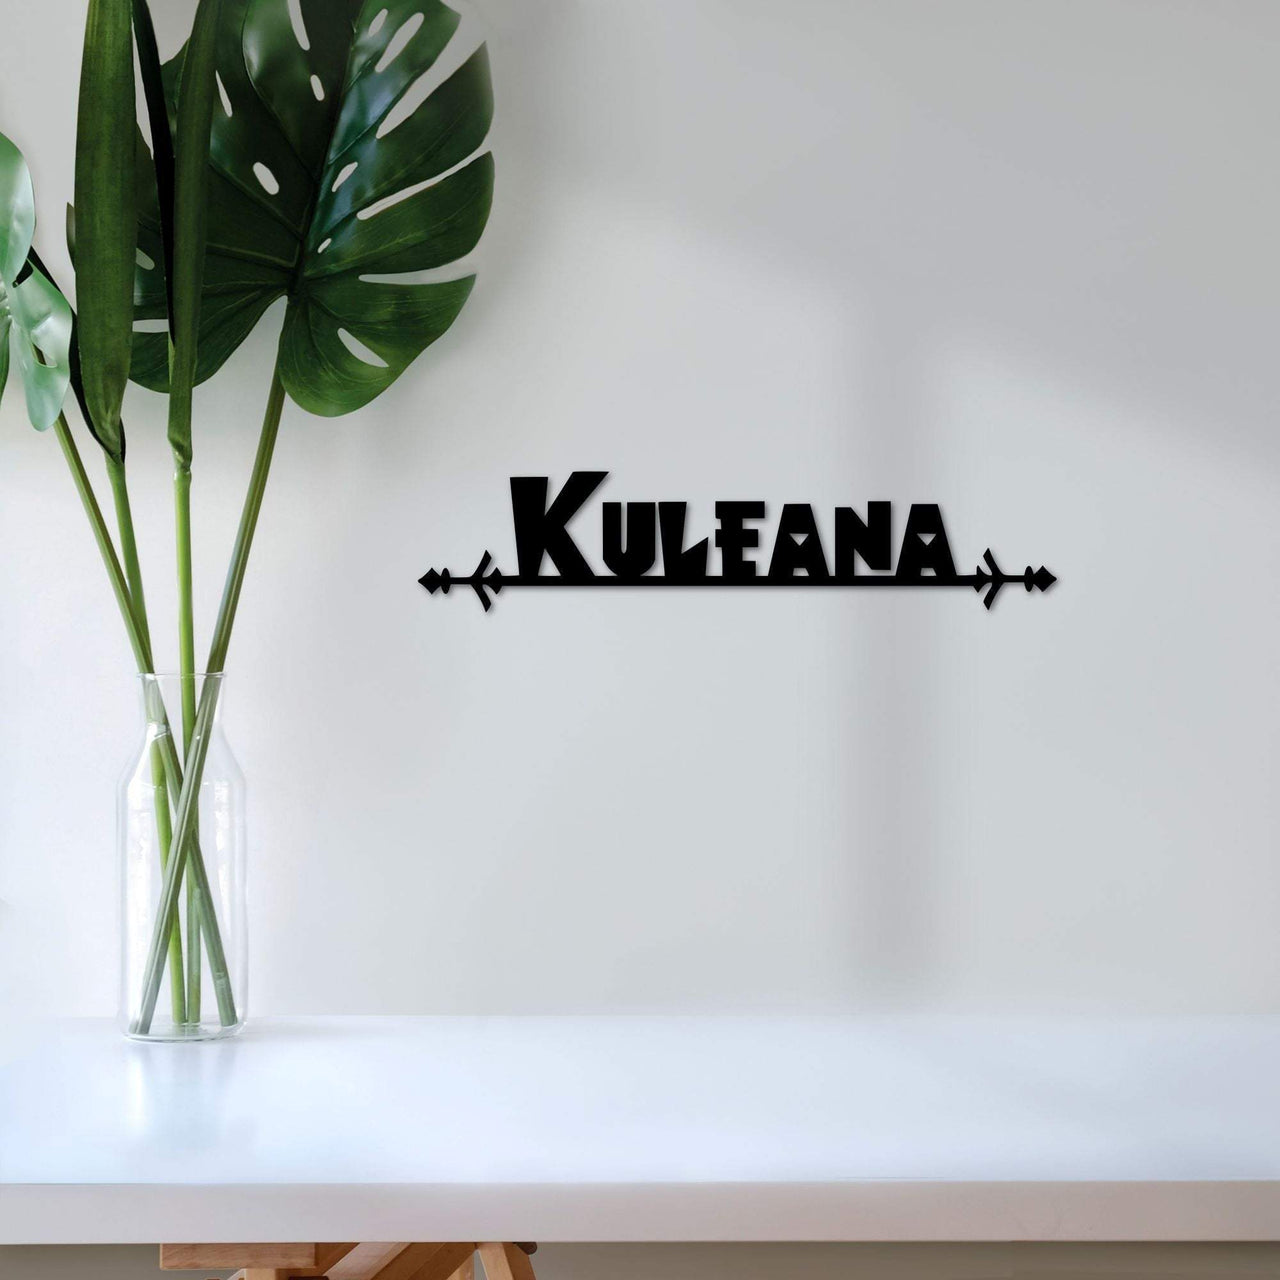 Kuleana Hawaiian Sign | Responsibility Metal Wall Art | Hawaii Decor | Inspiration Wall Decor | Steel Word Art | Hawaiian Style Art | Tribal